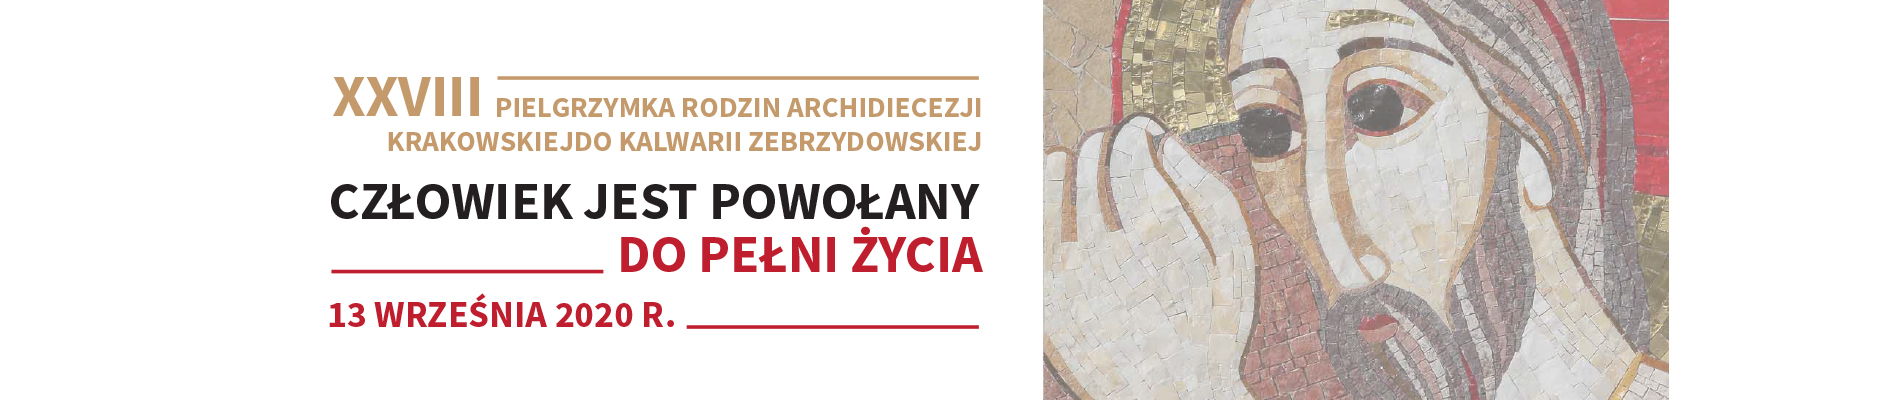 XXVIII Pielgrzymka Rodzin Archidiecezji Krakowskiej do Kalwarii Zebrzydowskiej